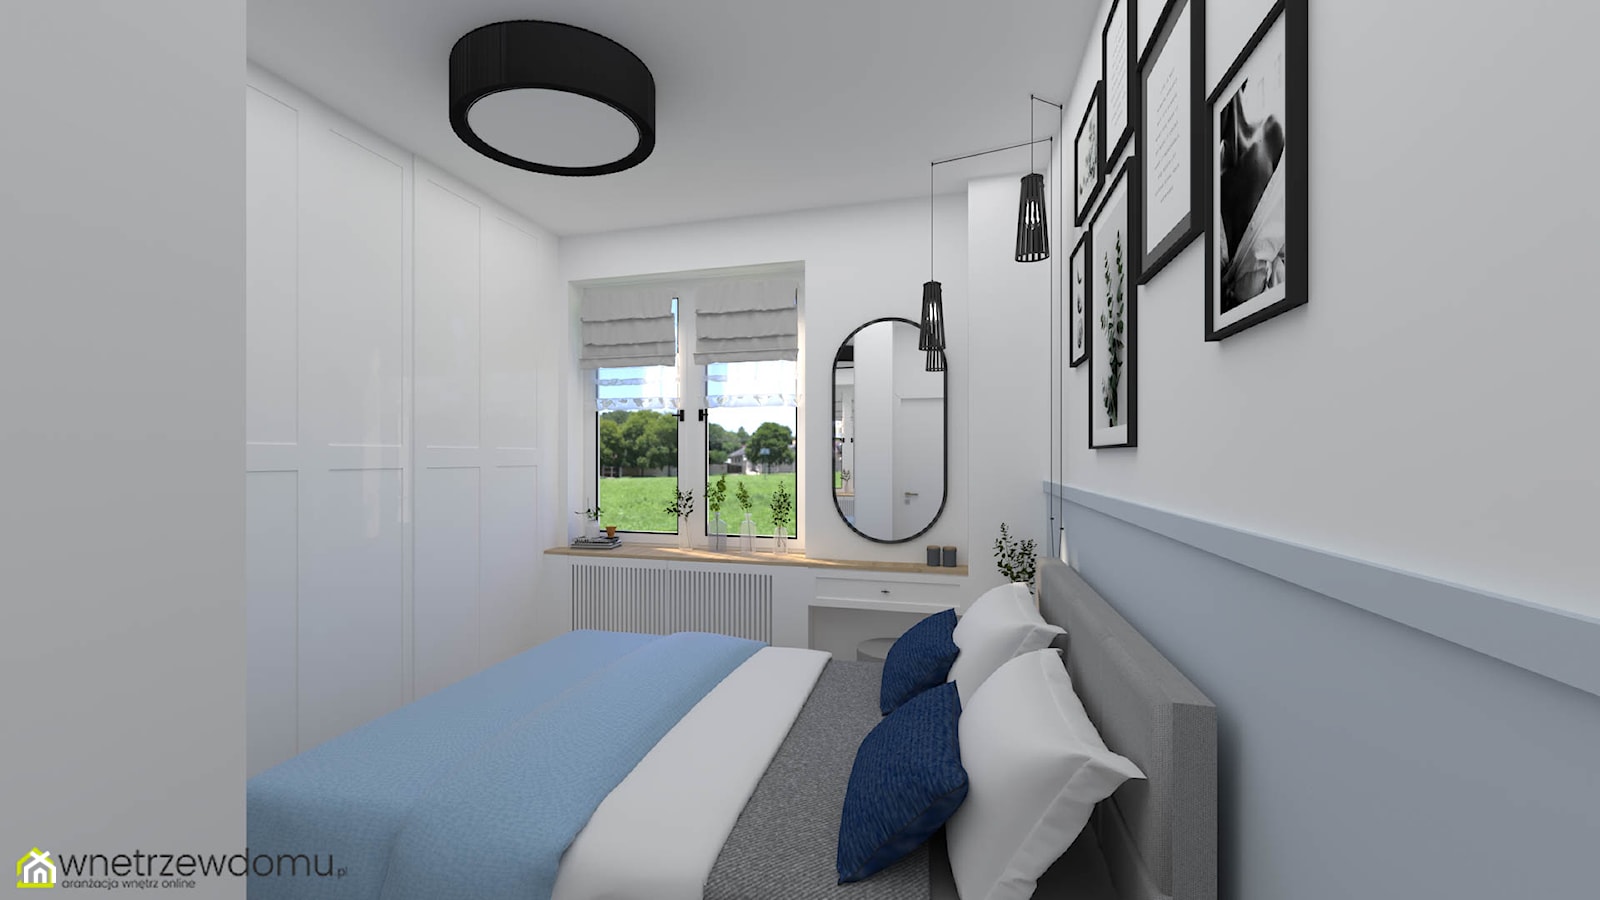 Przytulna sypialnia z niebieską lamperią - zdjęcie od wnetrzewdomu - Homebook